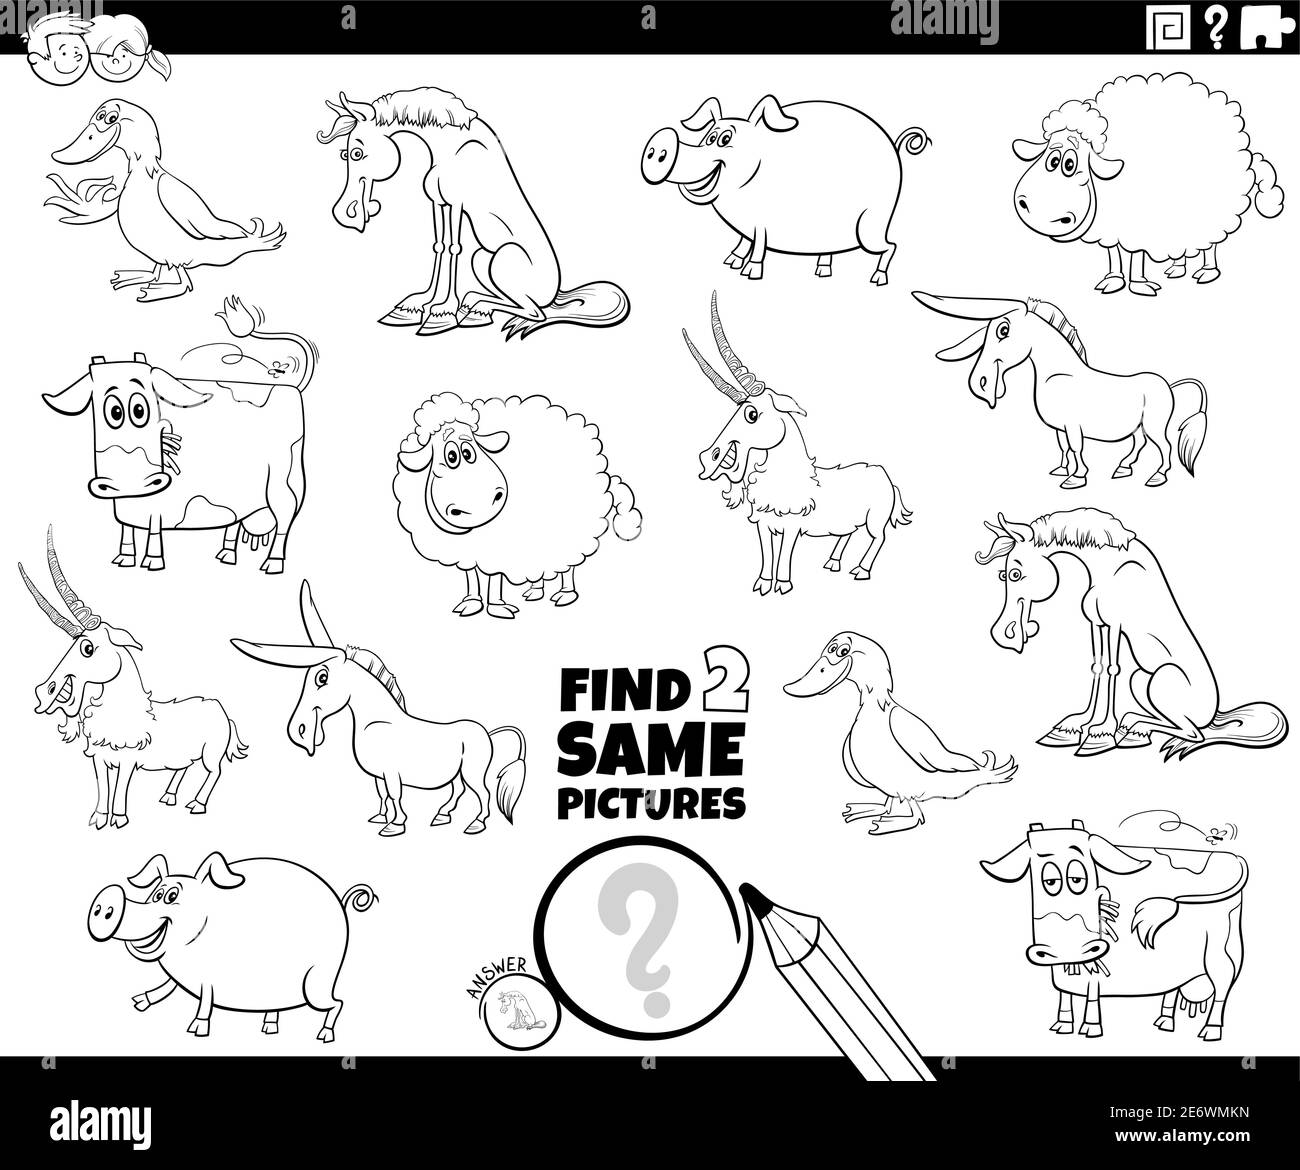 Illustration de dessin animé noir et blanc de la recherche de deux images identiques tâche éducative avec les personnages animaux de ferme coloriage livre page Illustration de Vecteur